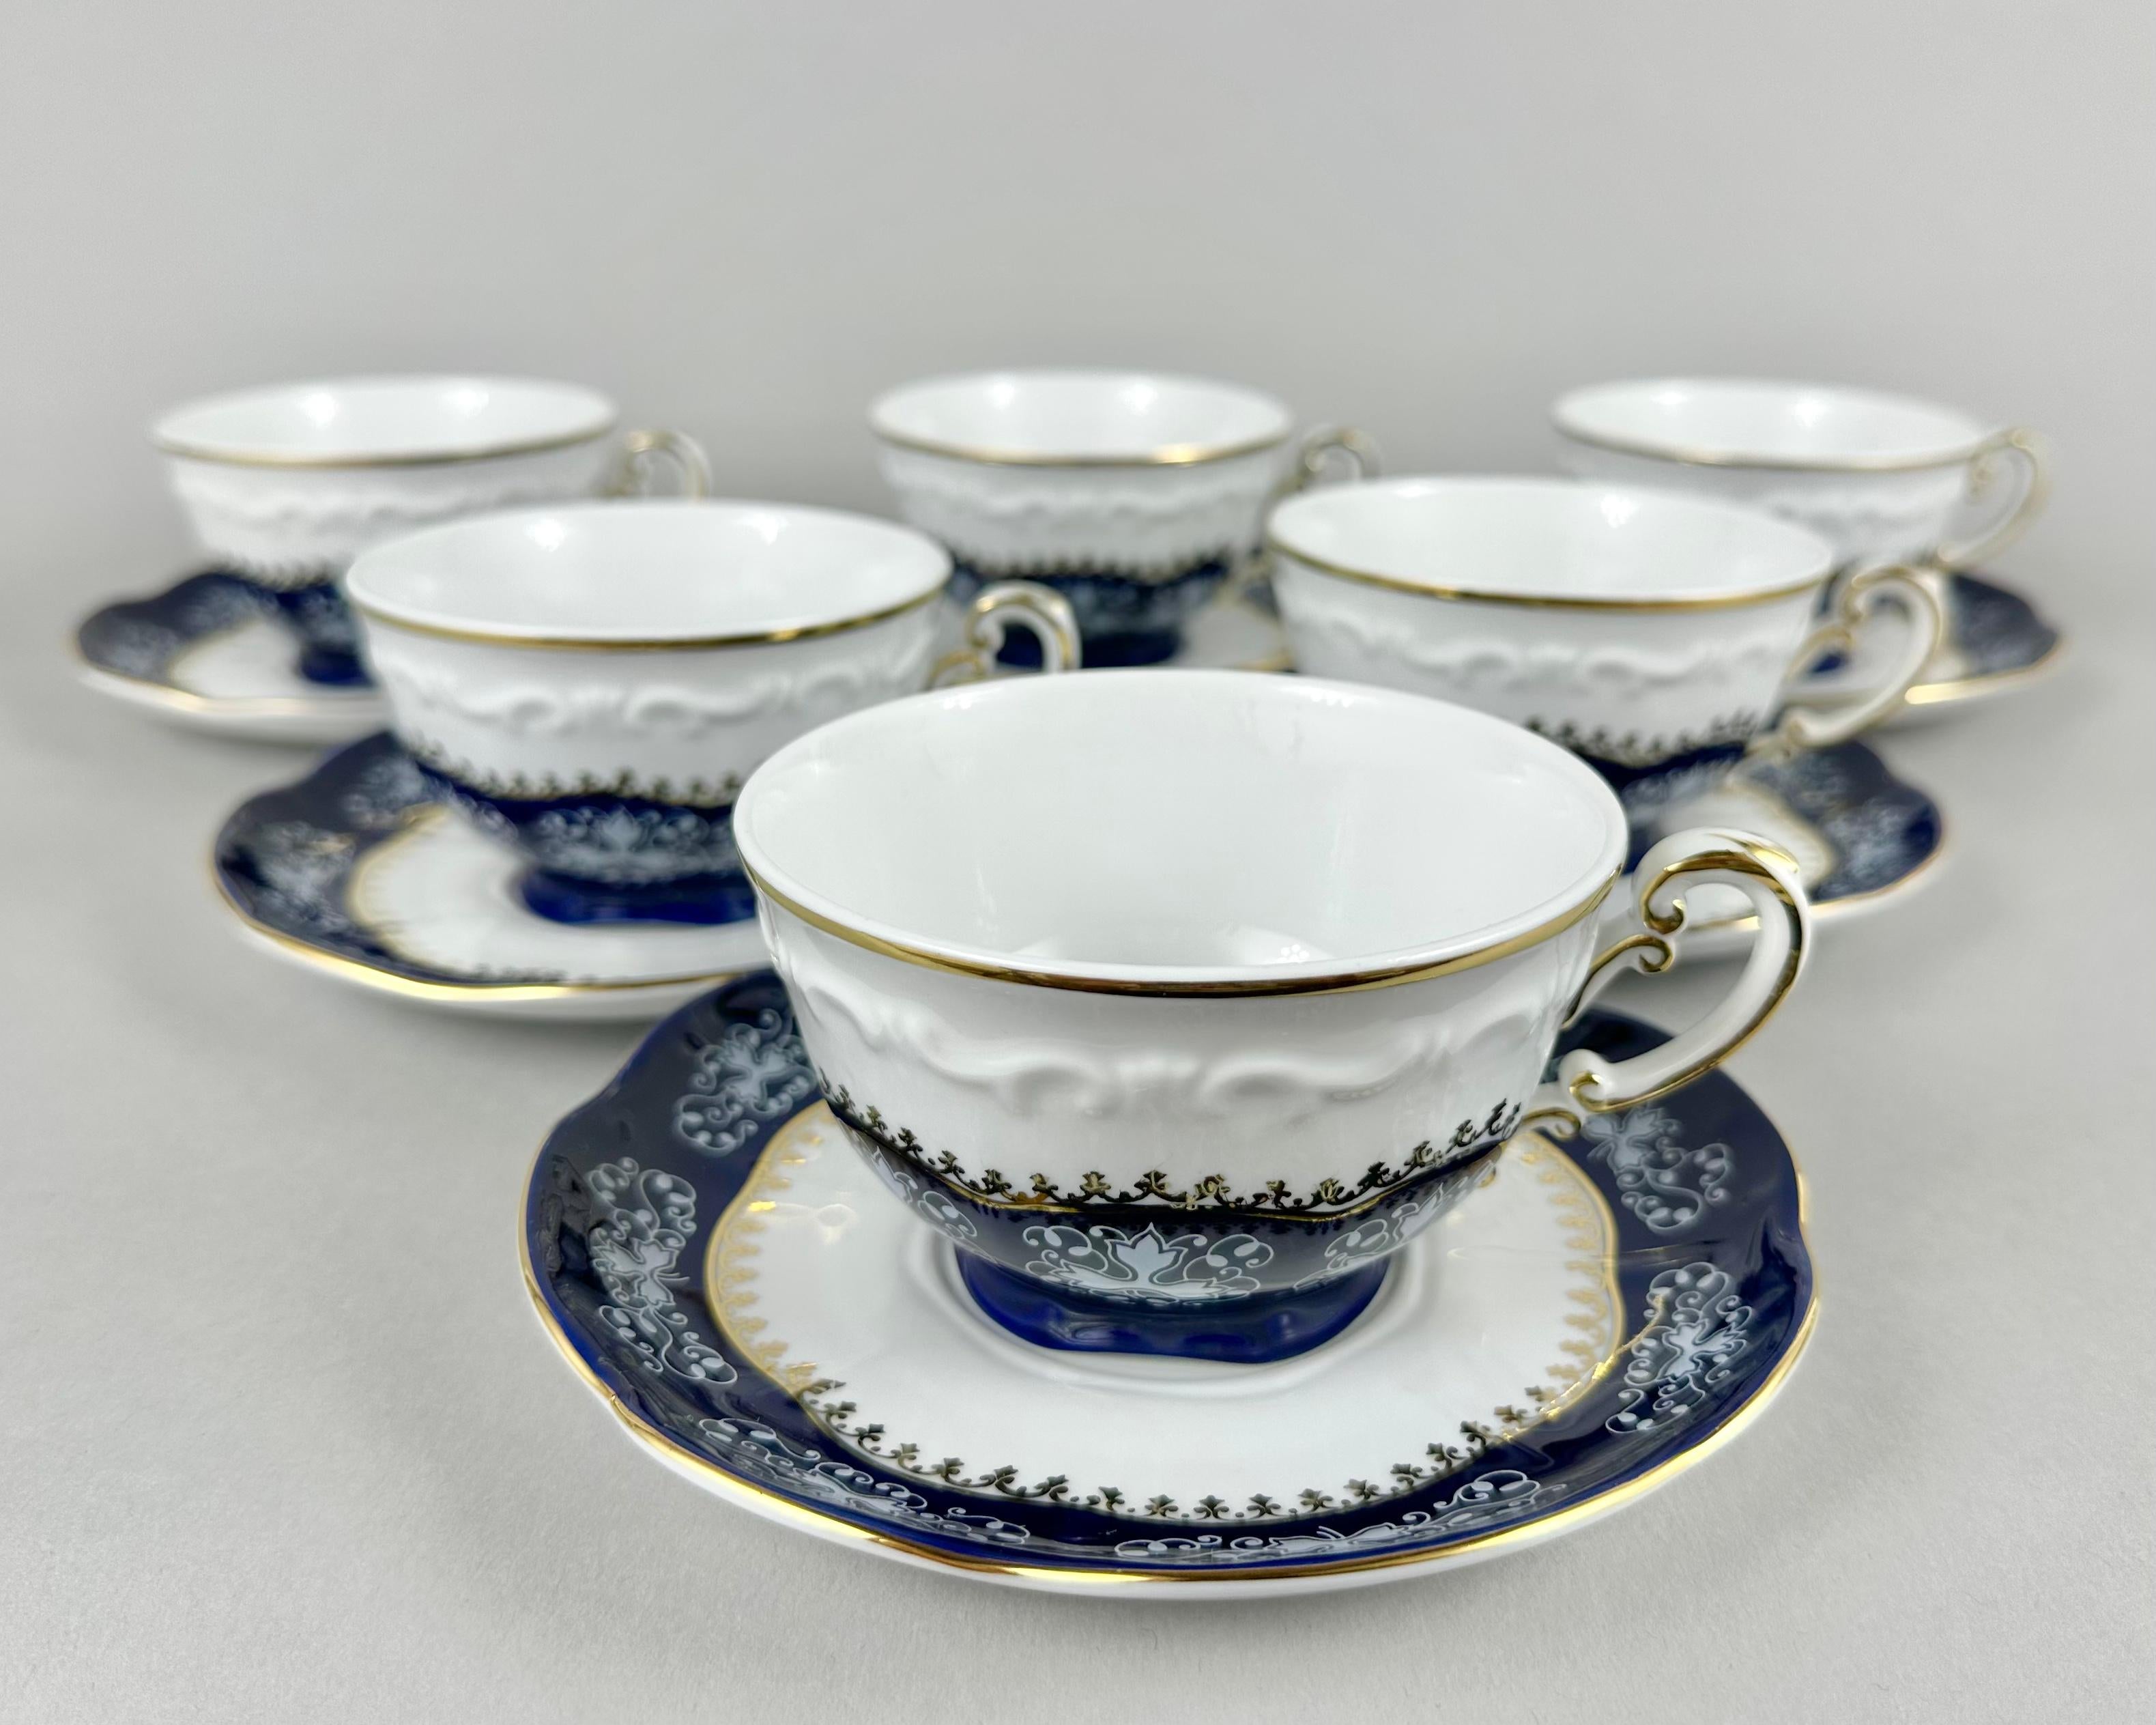 Service à café ou à thé en porcelaine vintage de Zsolney Manufacturer, Hongrie, années 1960.

Whiting se compose de 15 pièces en porcelaine blanche avec des motifs et des bords bleu cobalt et or.

Zsolnay crée de la porcelaine peinte à la main à